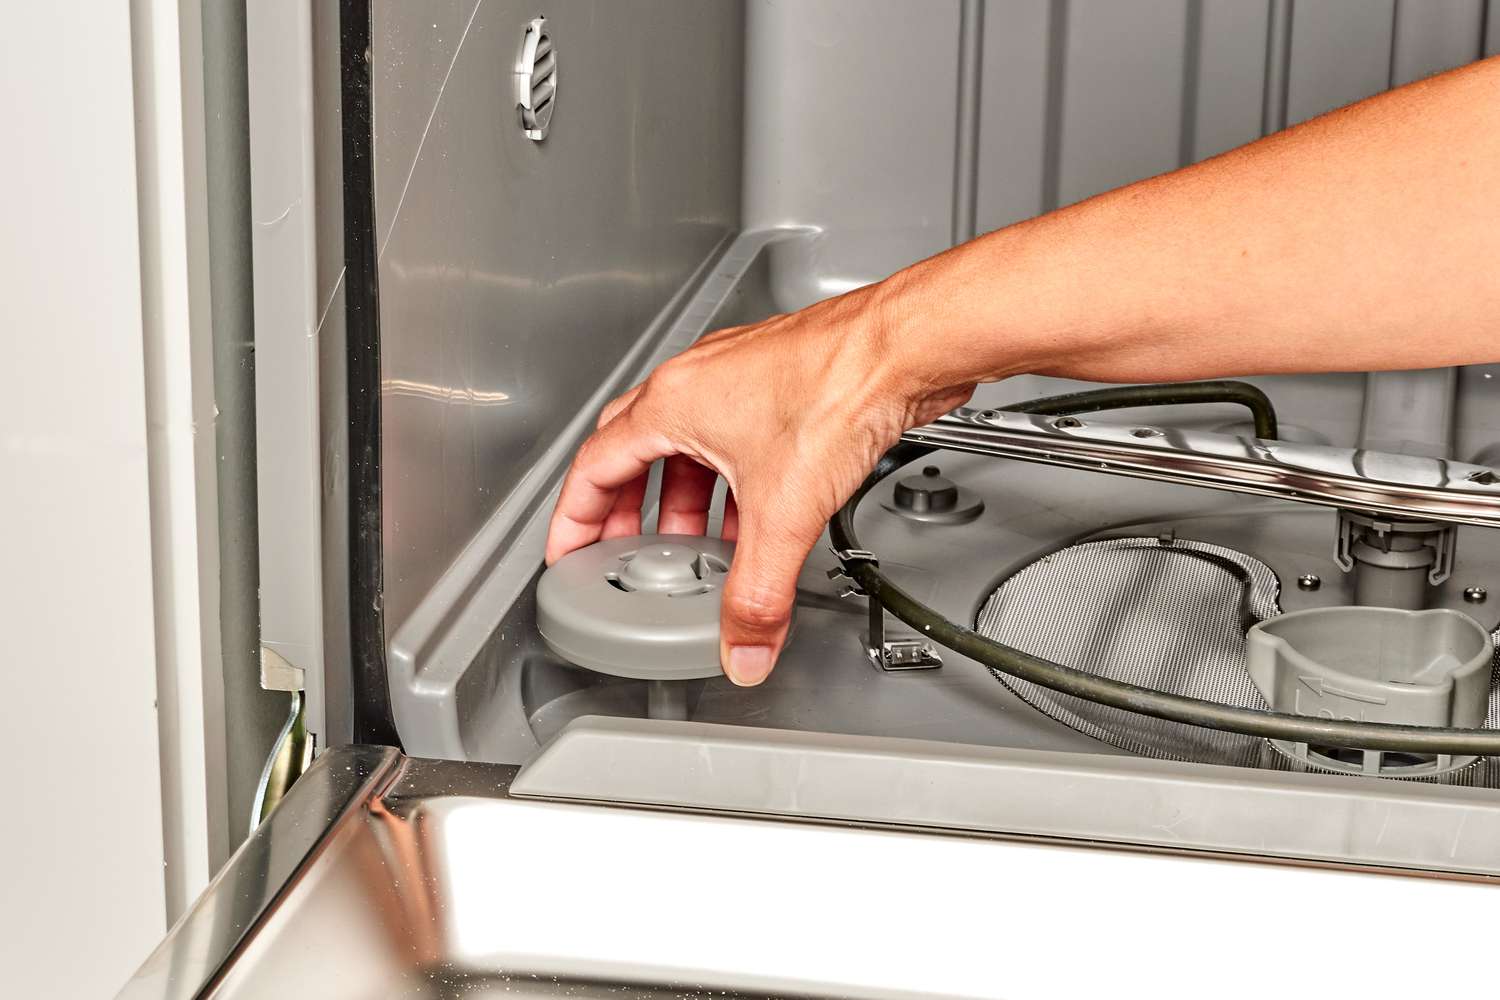 Boia da máquina de lavar louça levantada com a mão para fixação